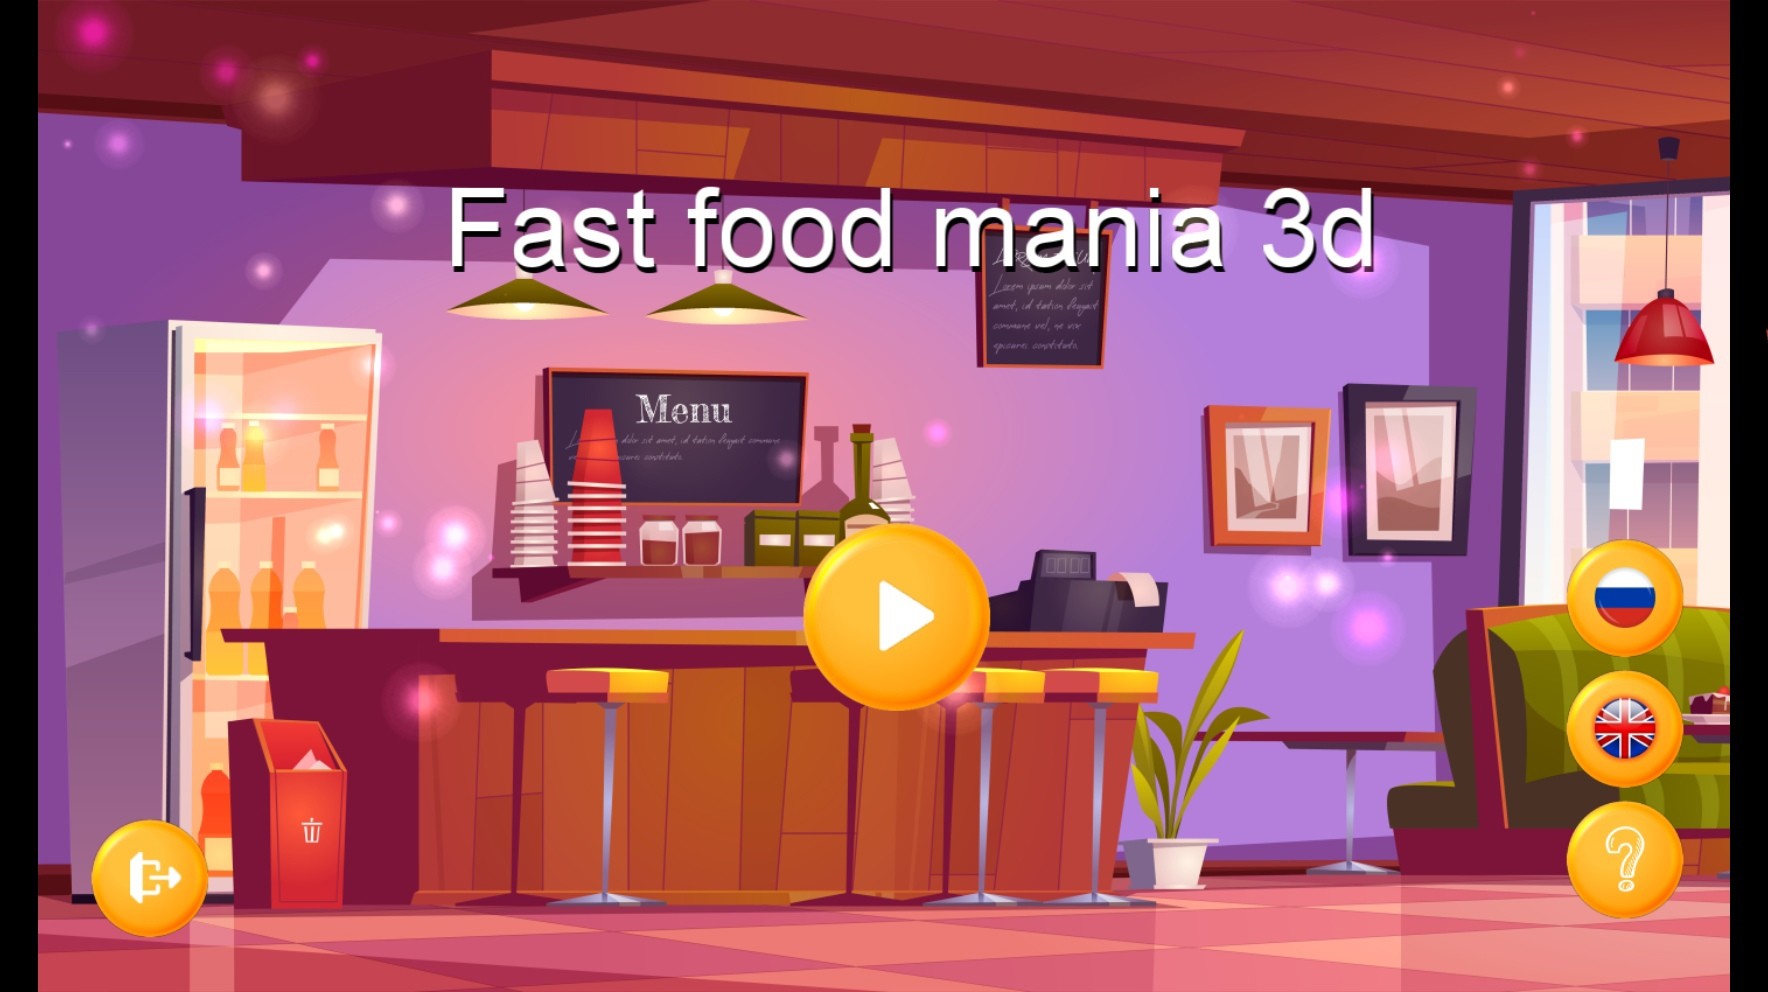 Fast Food Mania 3D Steam CD Key 4.01$